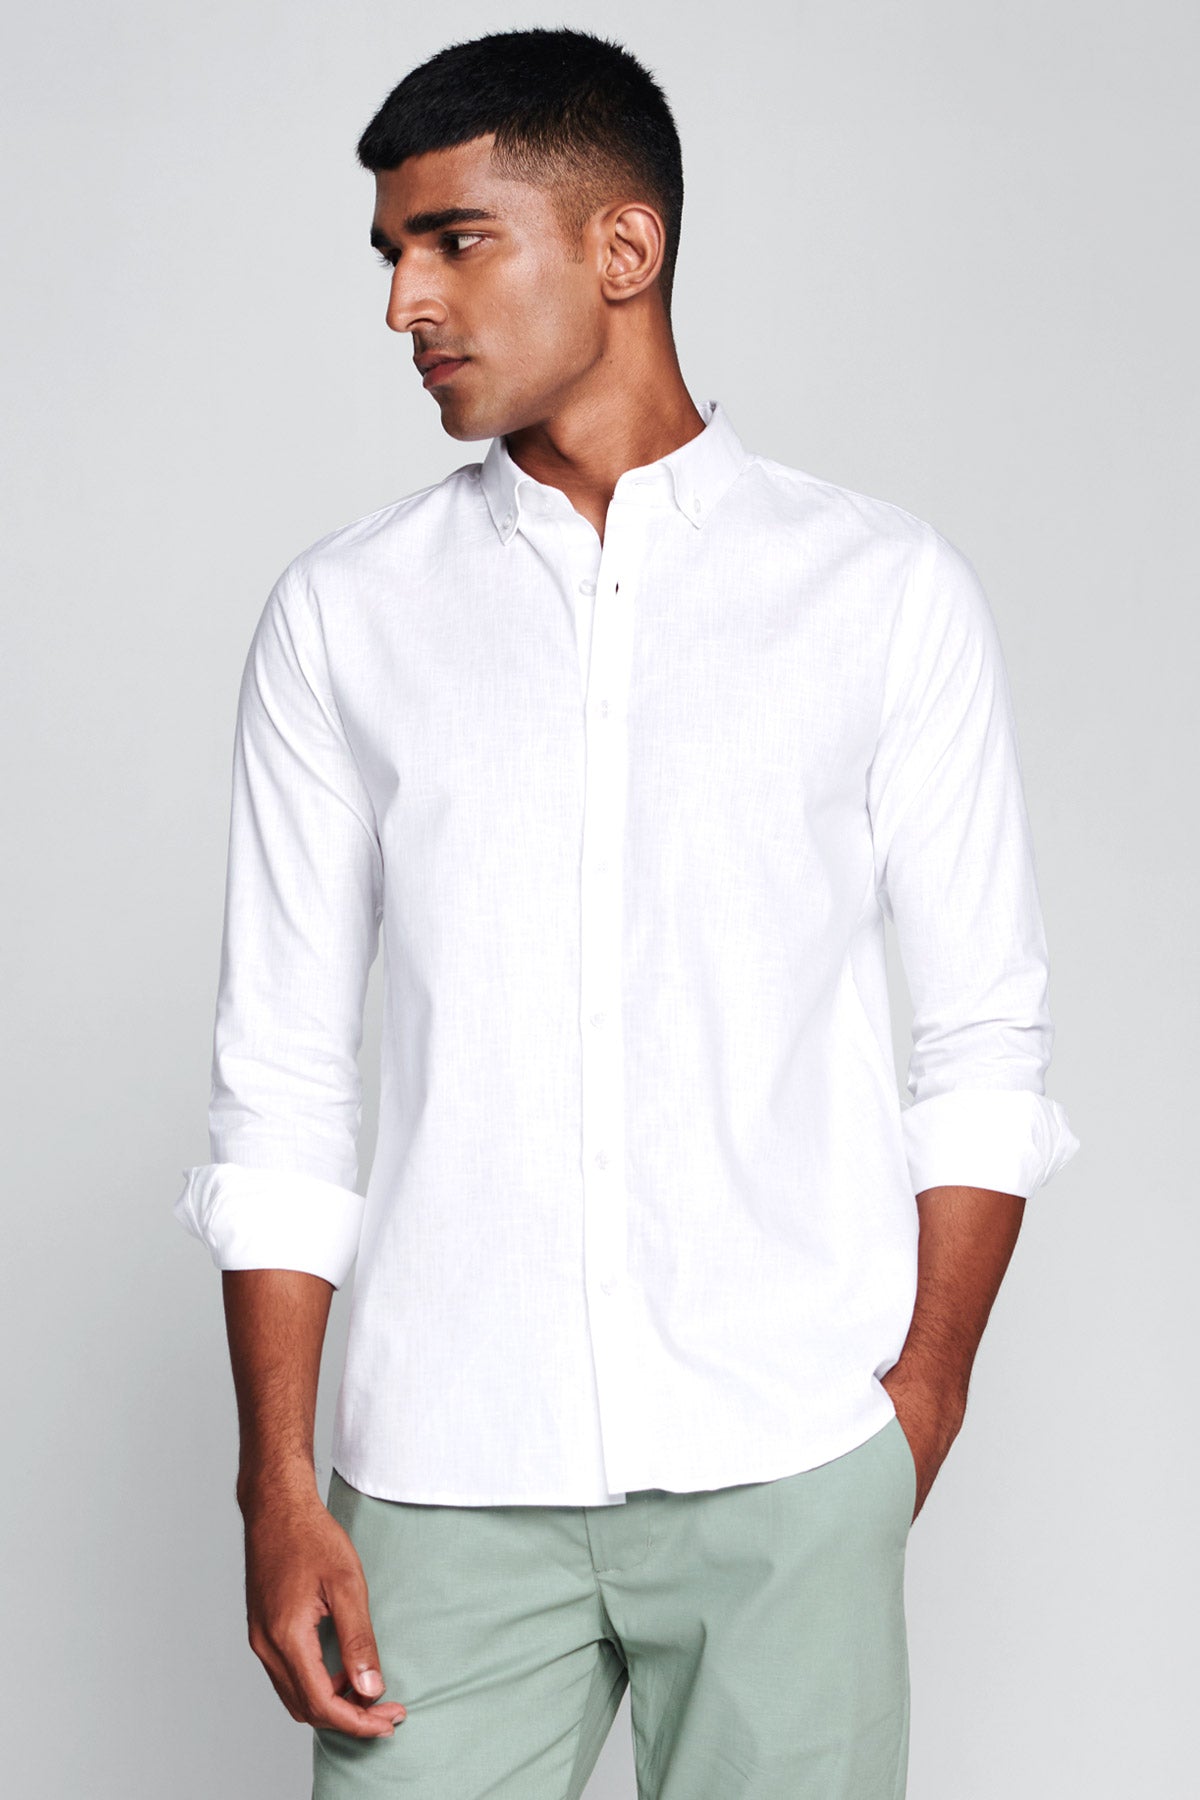 Buy White Full Sleeves Cotton Linen Shirt For Men's